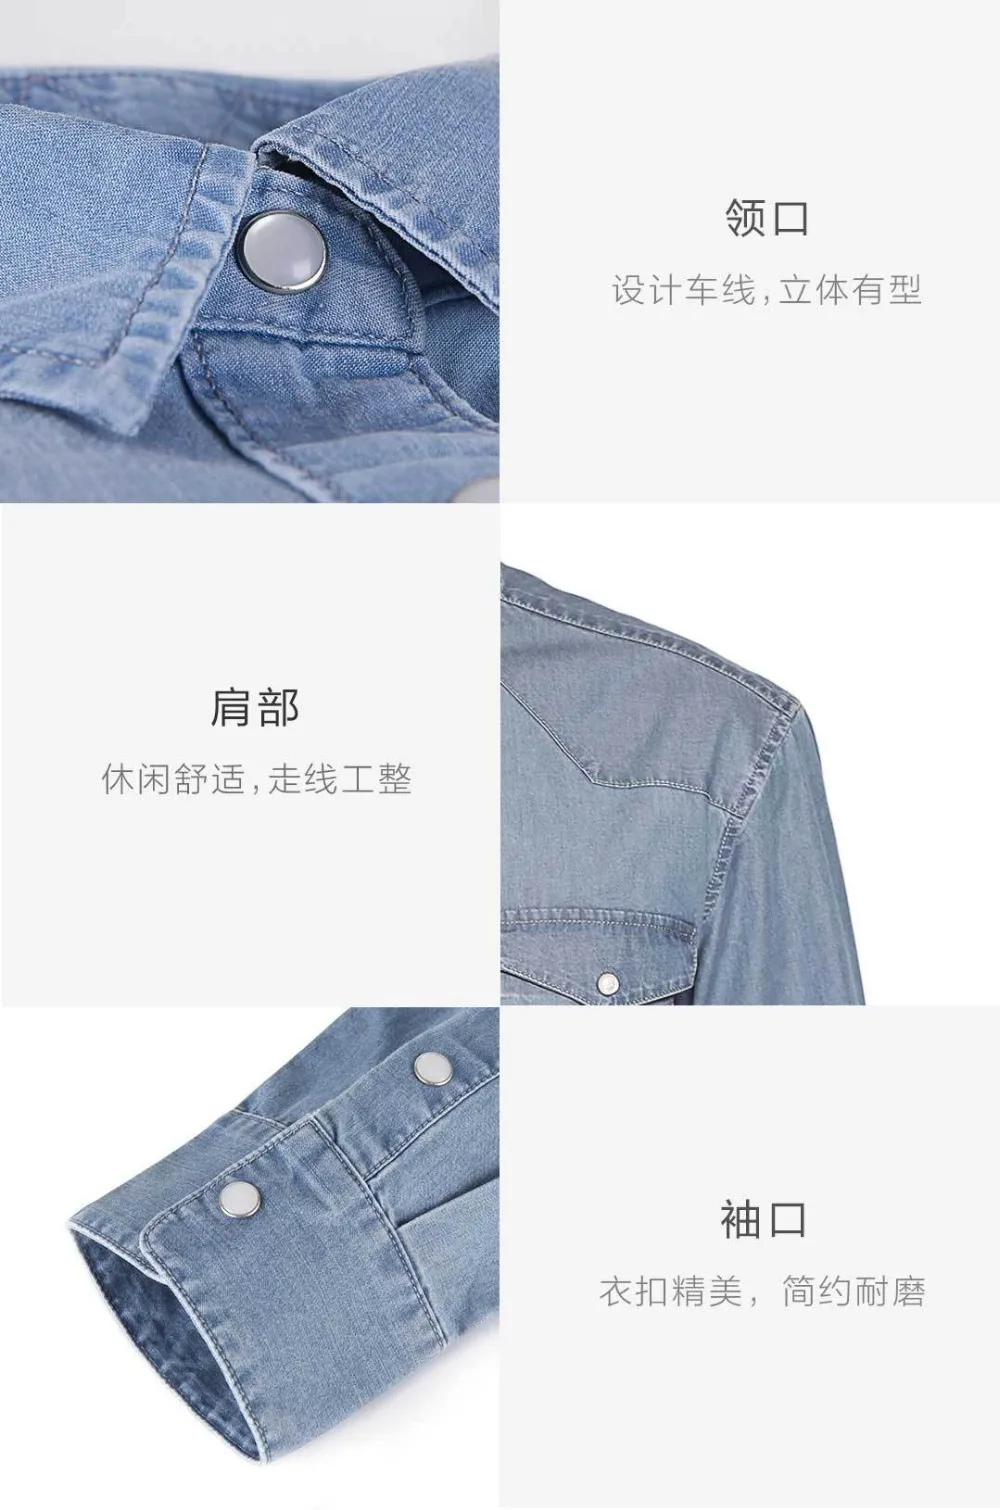 Xiaomi COTTONSMITH Базовая Повседневная джинсовая рубашка Классическая основа удобная имитация денима Молодежная Ткань Горячая Распродажа